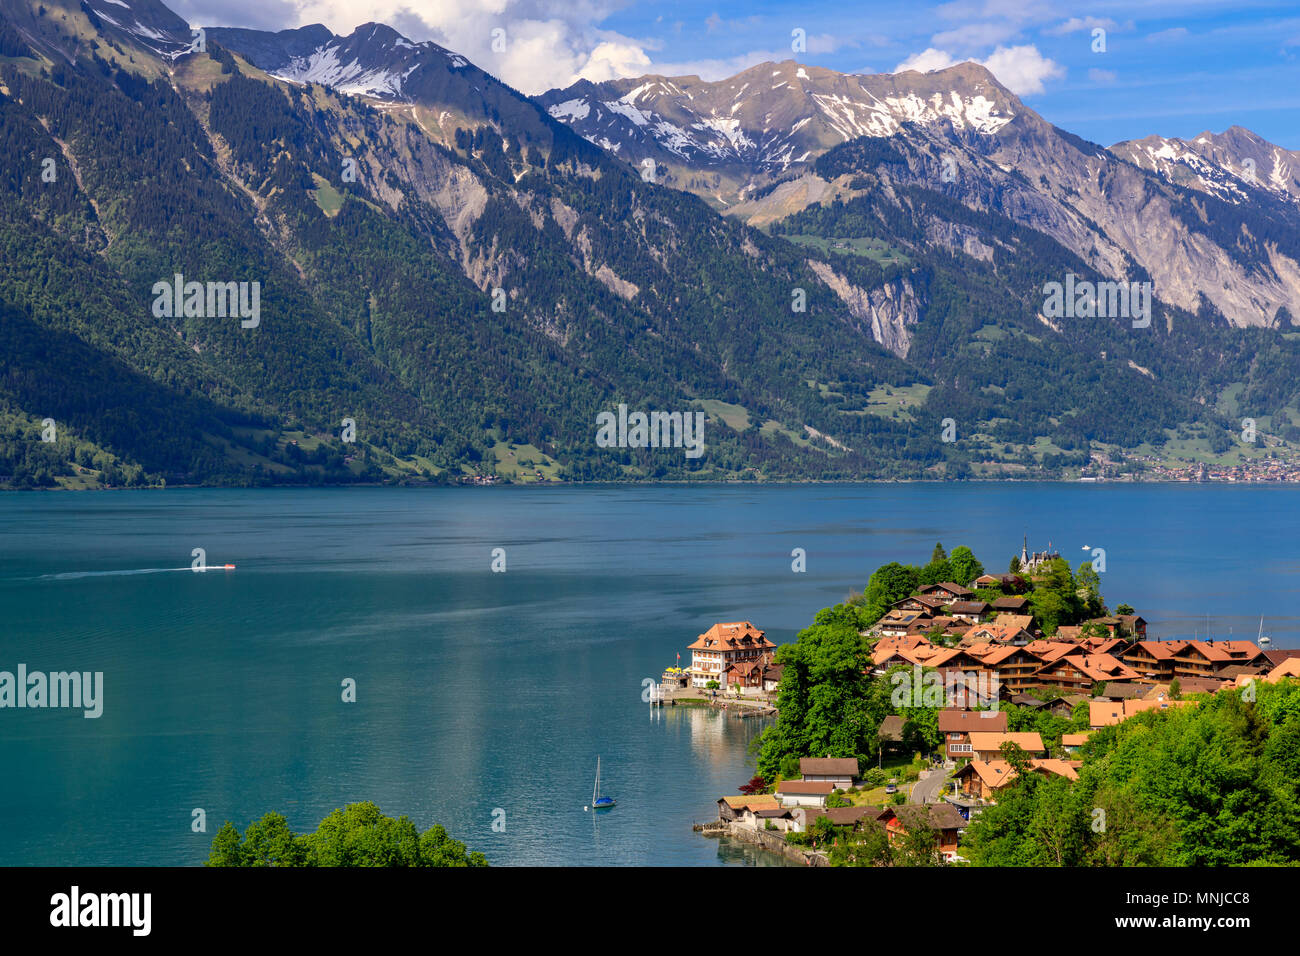 Le lac de Brienz avec le village Iseltwald, Oberland Bernois, Suisse Banque D'Images